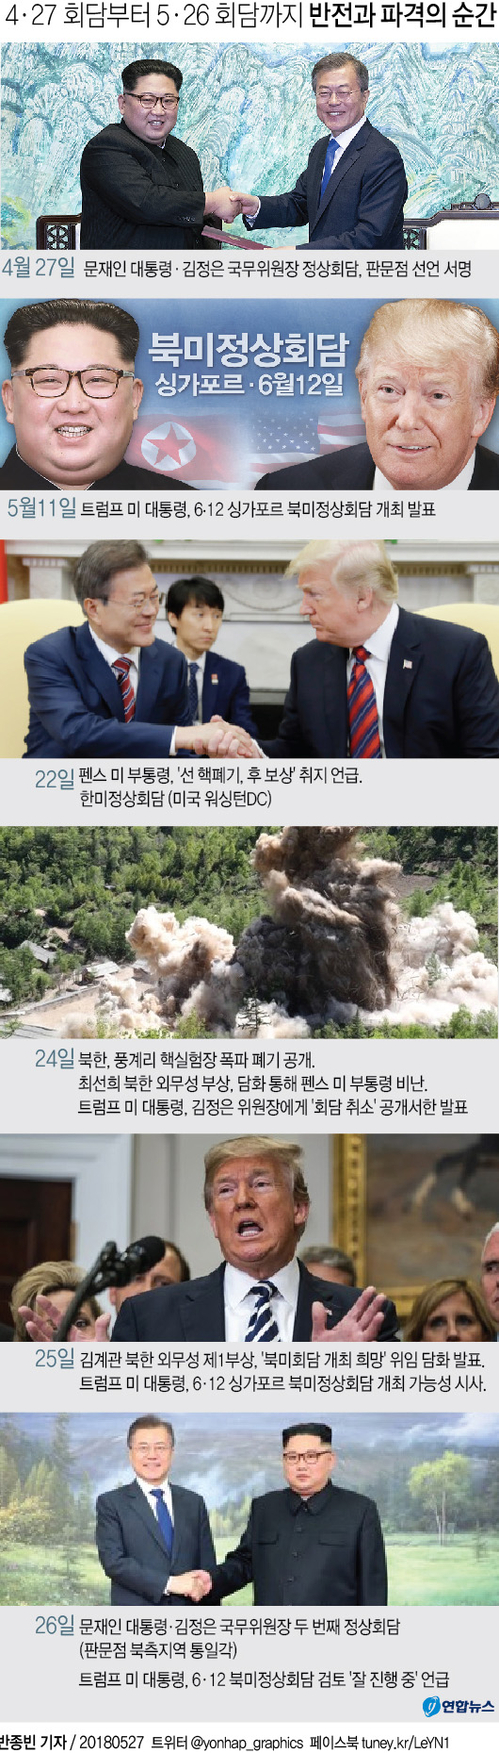 [남북정상회담] 北美 '샅바싸움' 종료…비핵화 '진검승부' 스타트 - 2